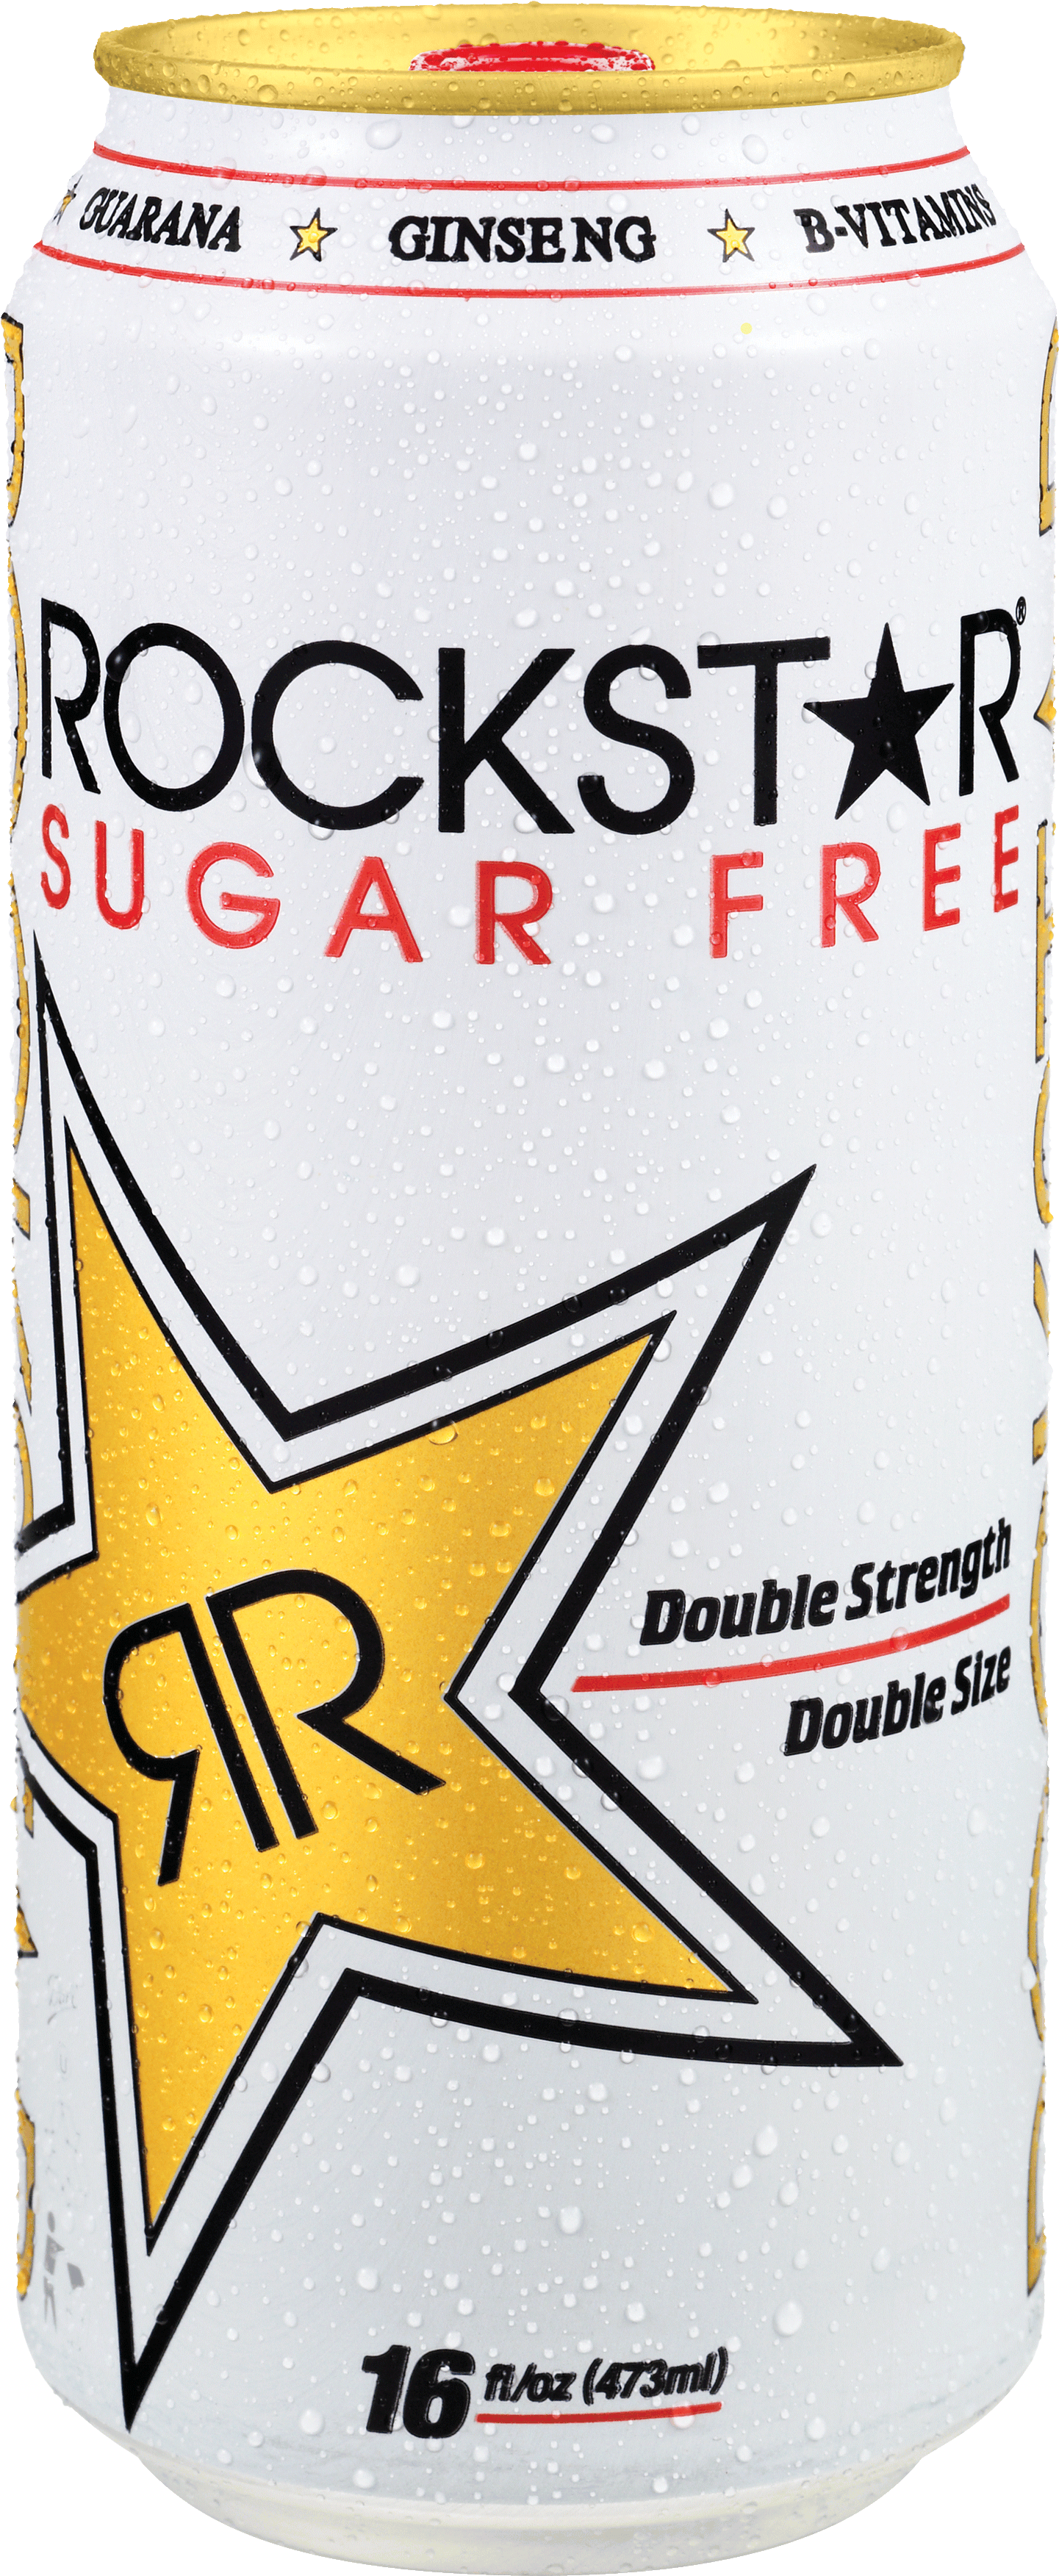 Rockstar Sugar Free Energy Drink Can